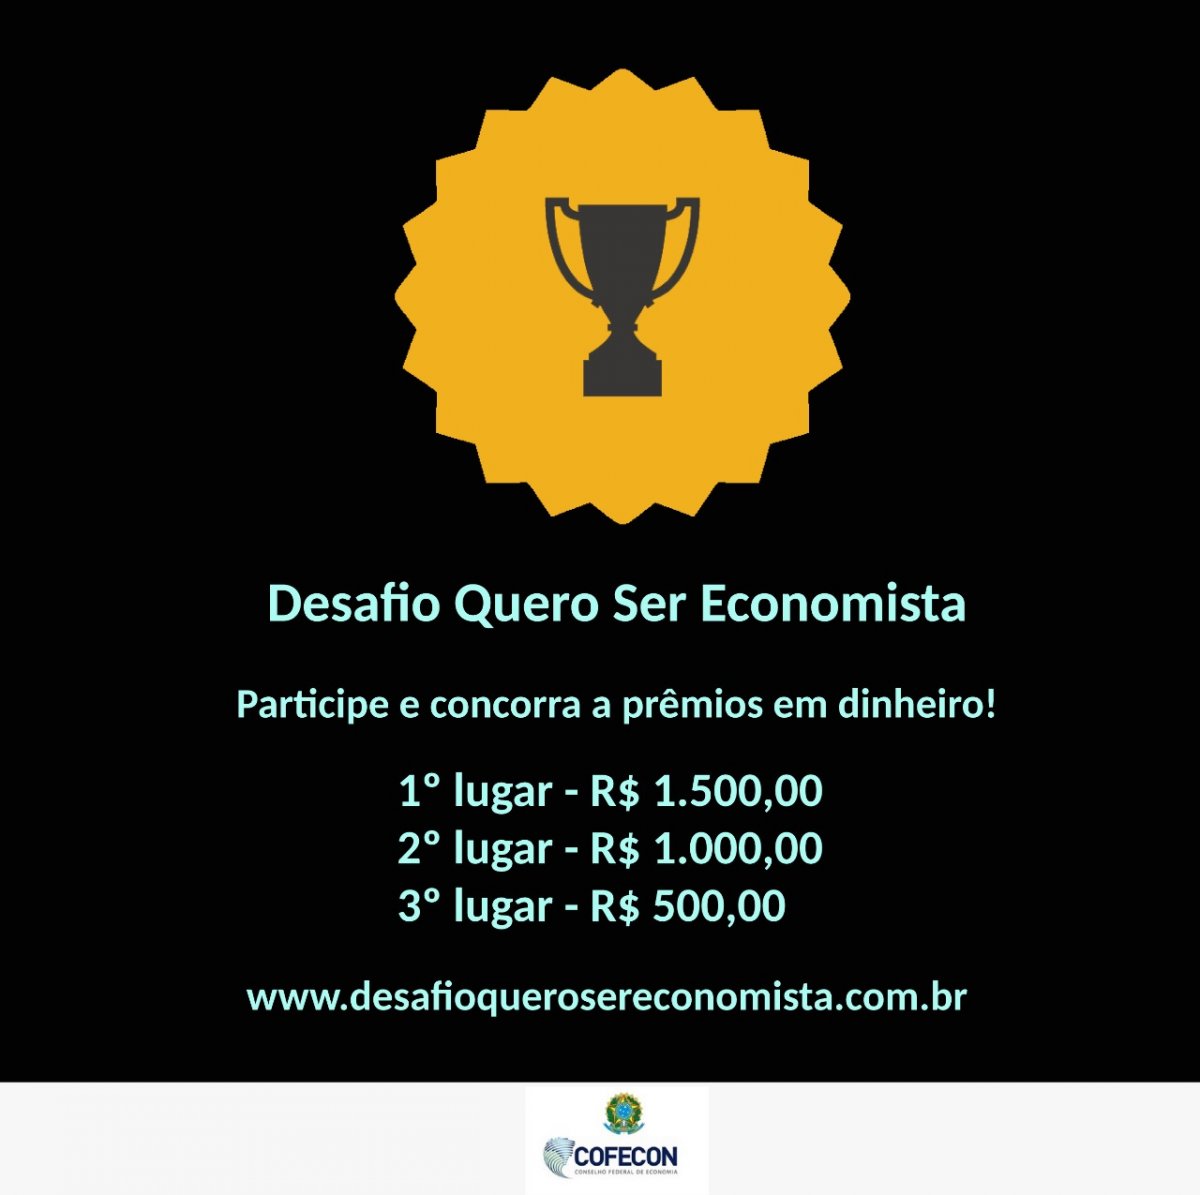 Desafio Quero Ser Economista terá premiação de até R$ 1,5 mil - Corecon/SC